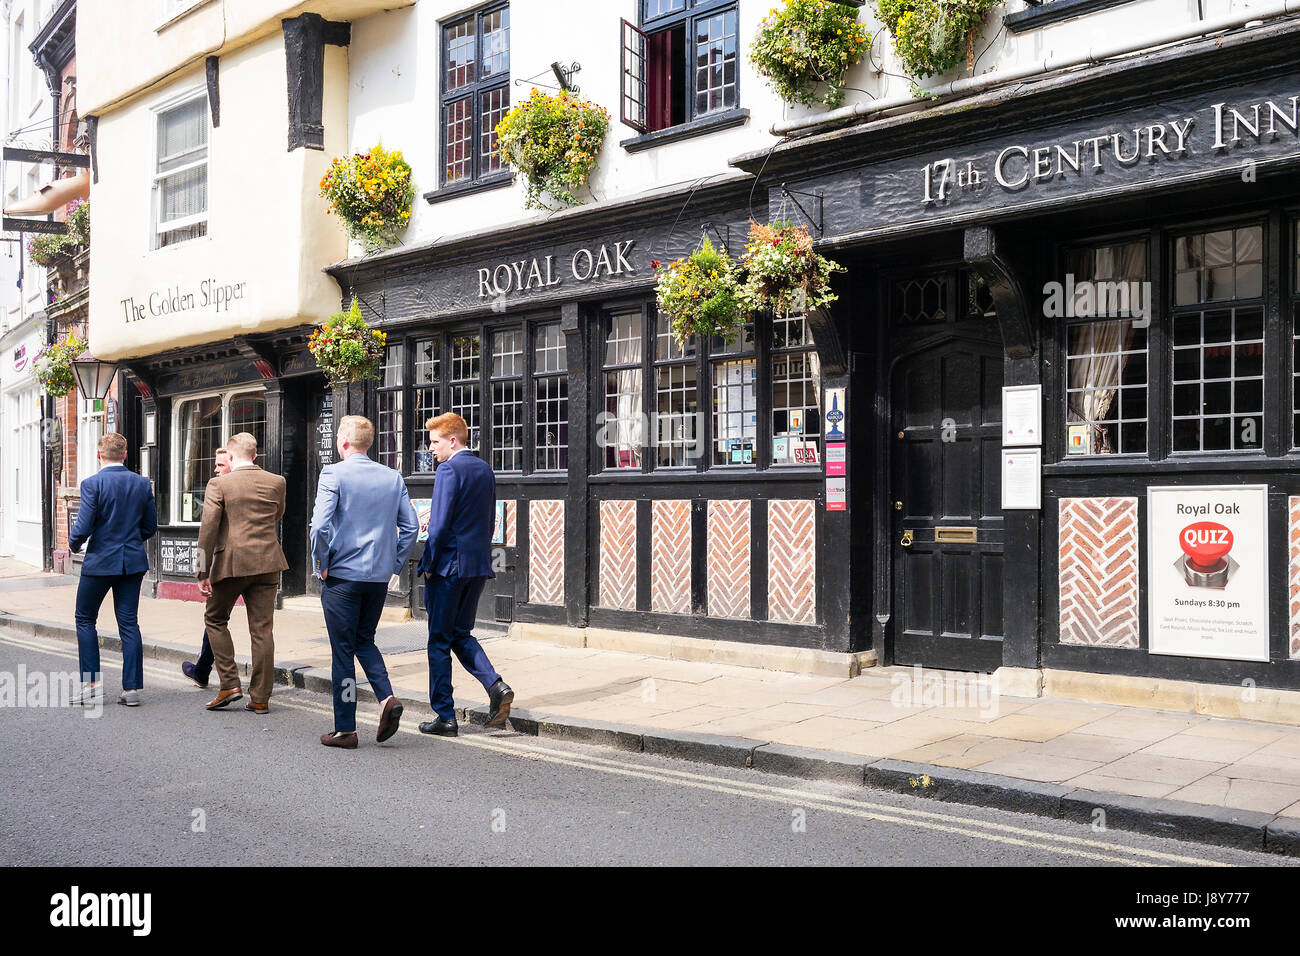 Cinque giovanotti oltrepassando la "Royal Oak' pub in Goodramgate, città di York, Regno Unito Foto Stock